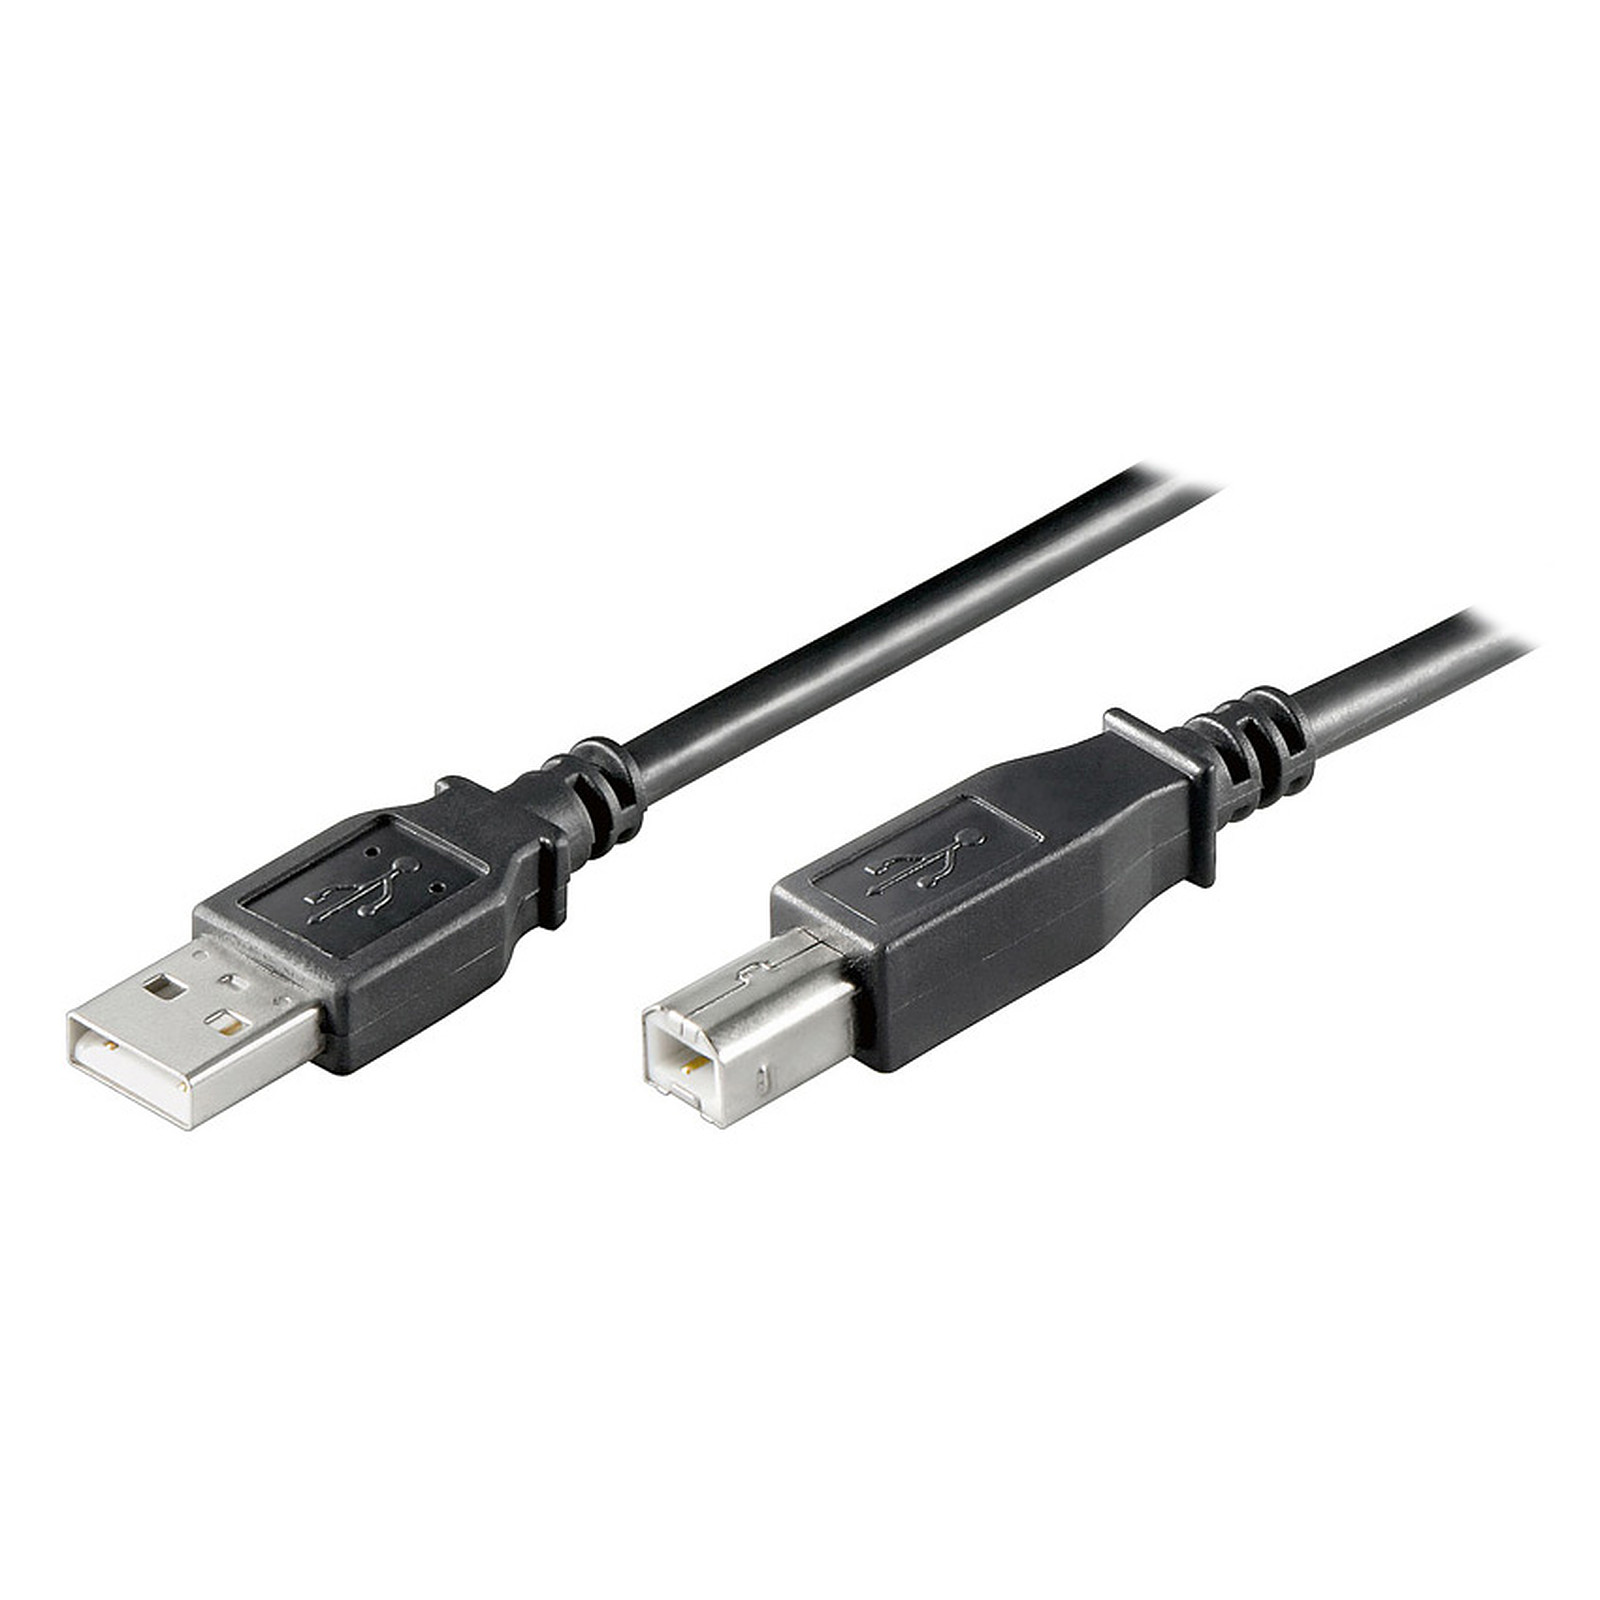 Cable USB 2.0 Type AB (Male/Male) Noir - 0.25 m - USB Generique